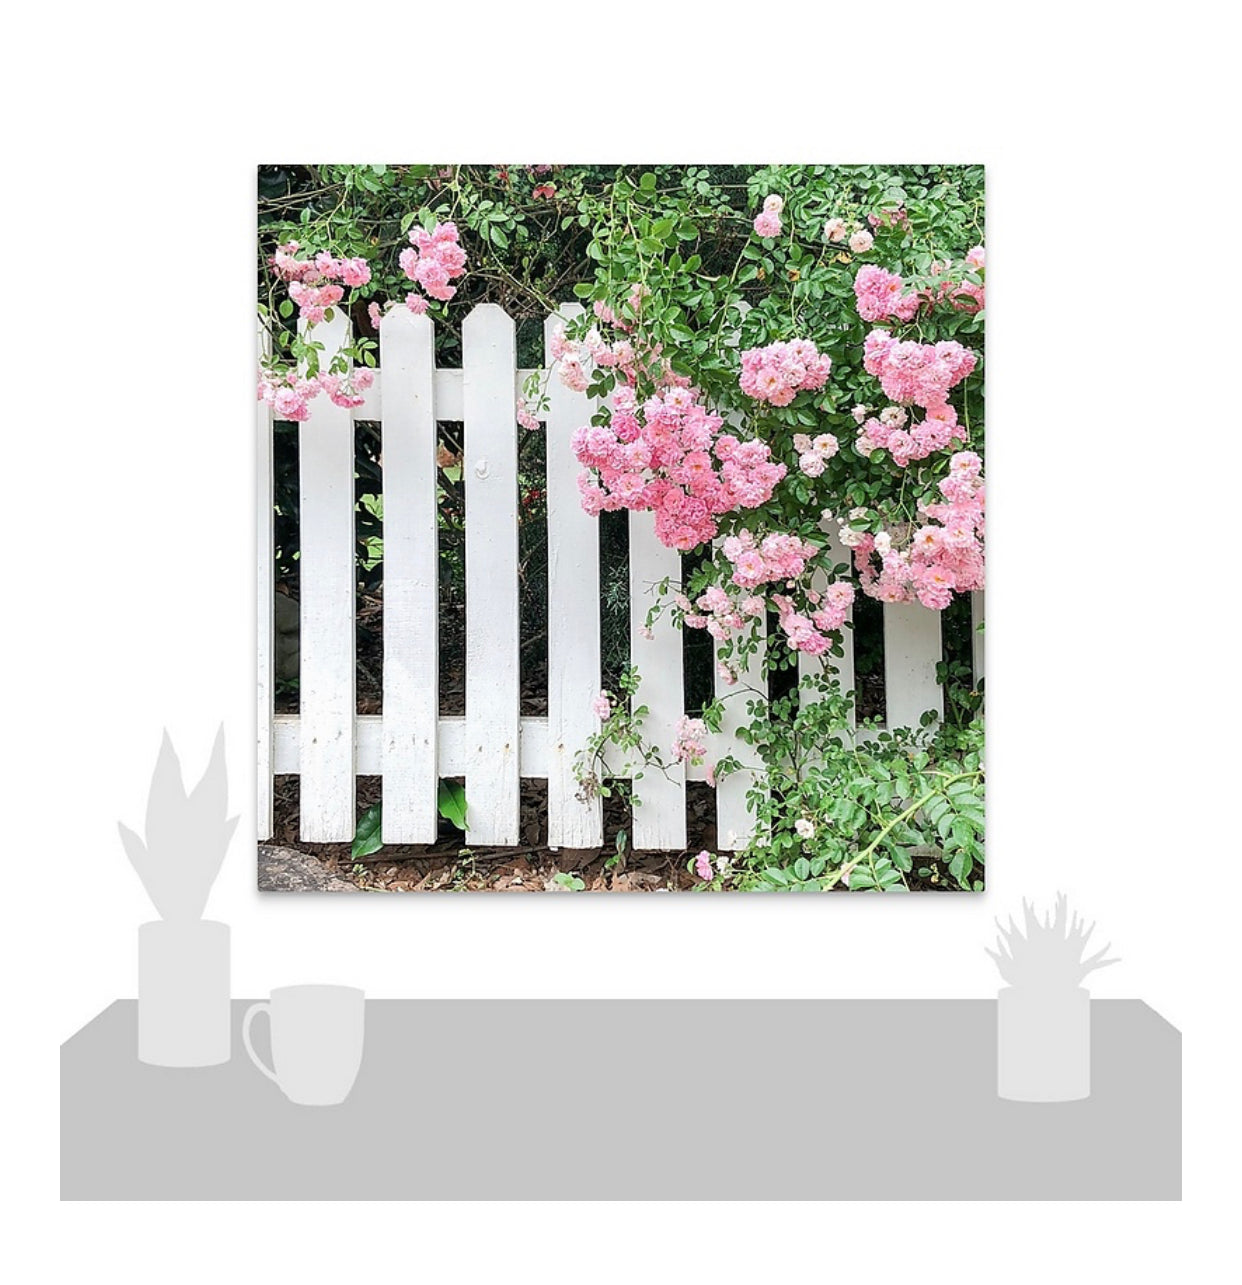 Valla de piquete blanca y lienzo envuelto en galería de rosas rosadas